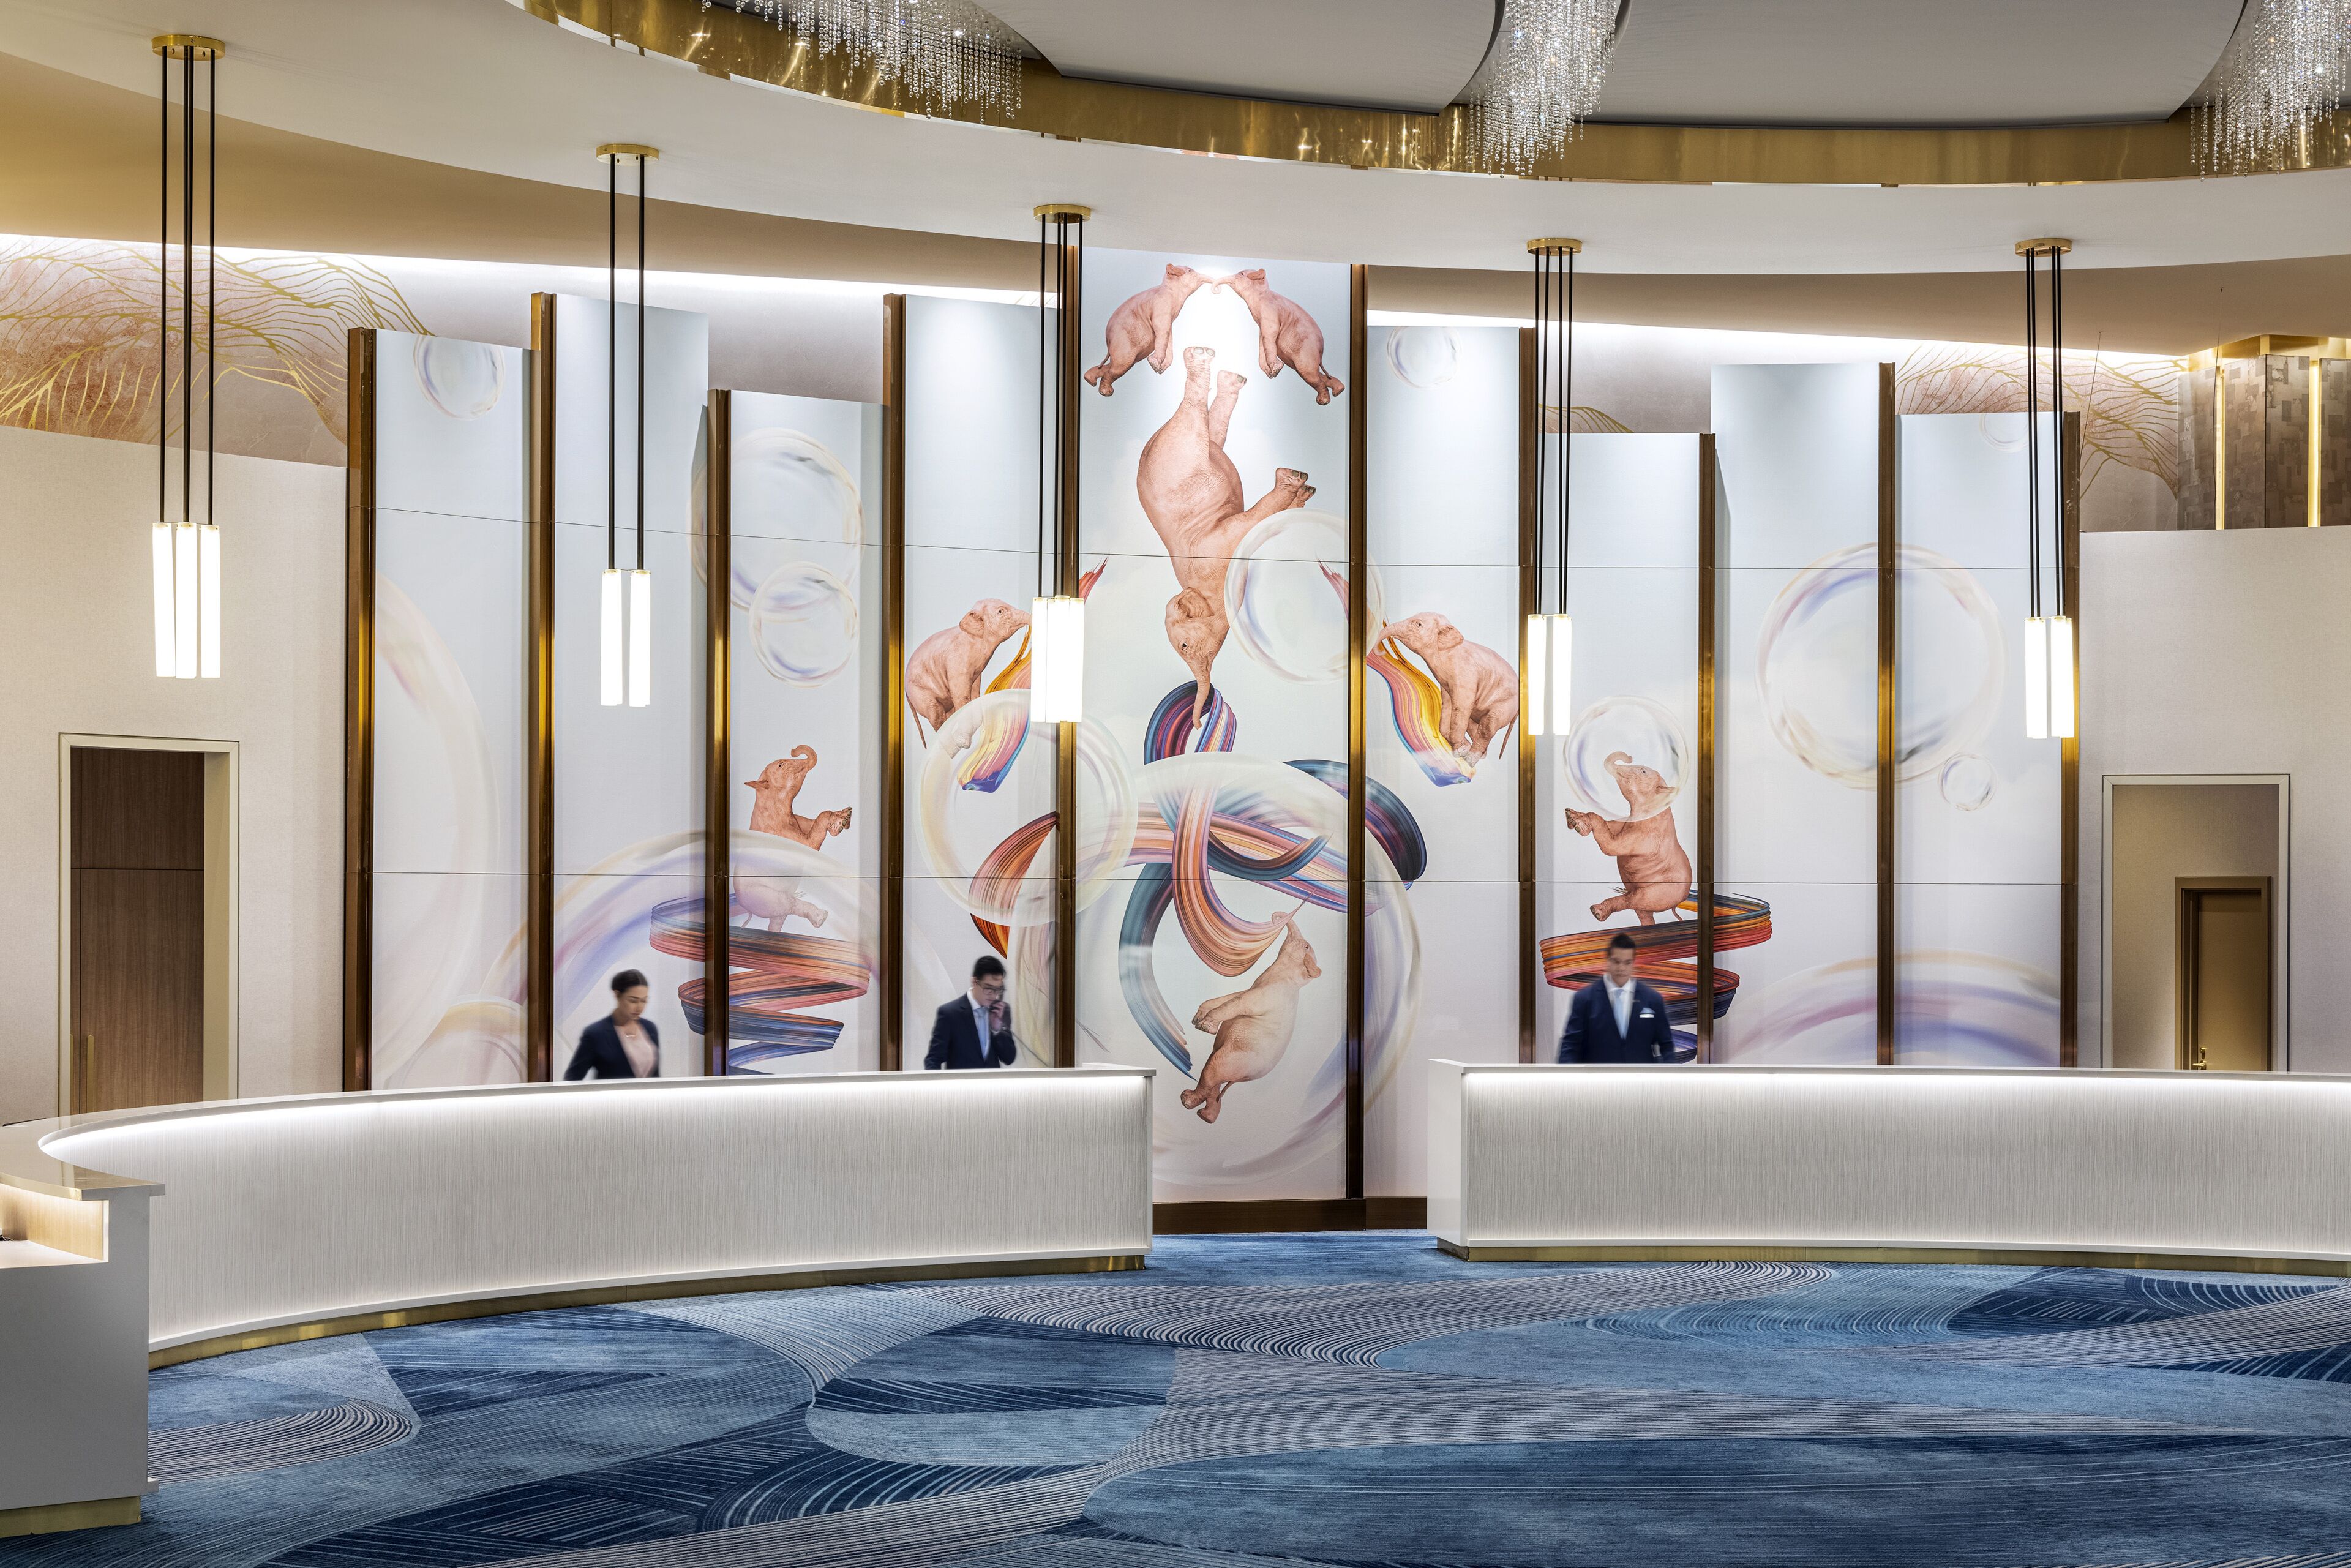 Conrad Las Vegas at Resorts World